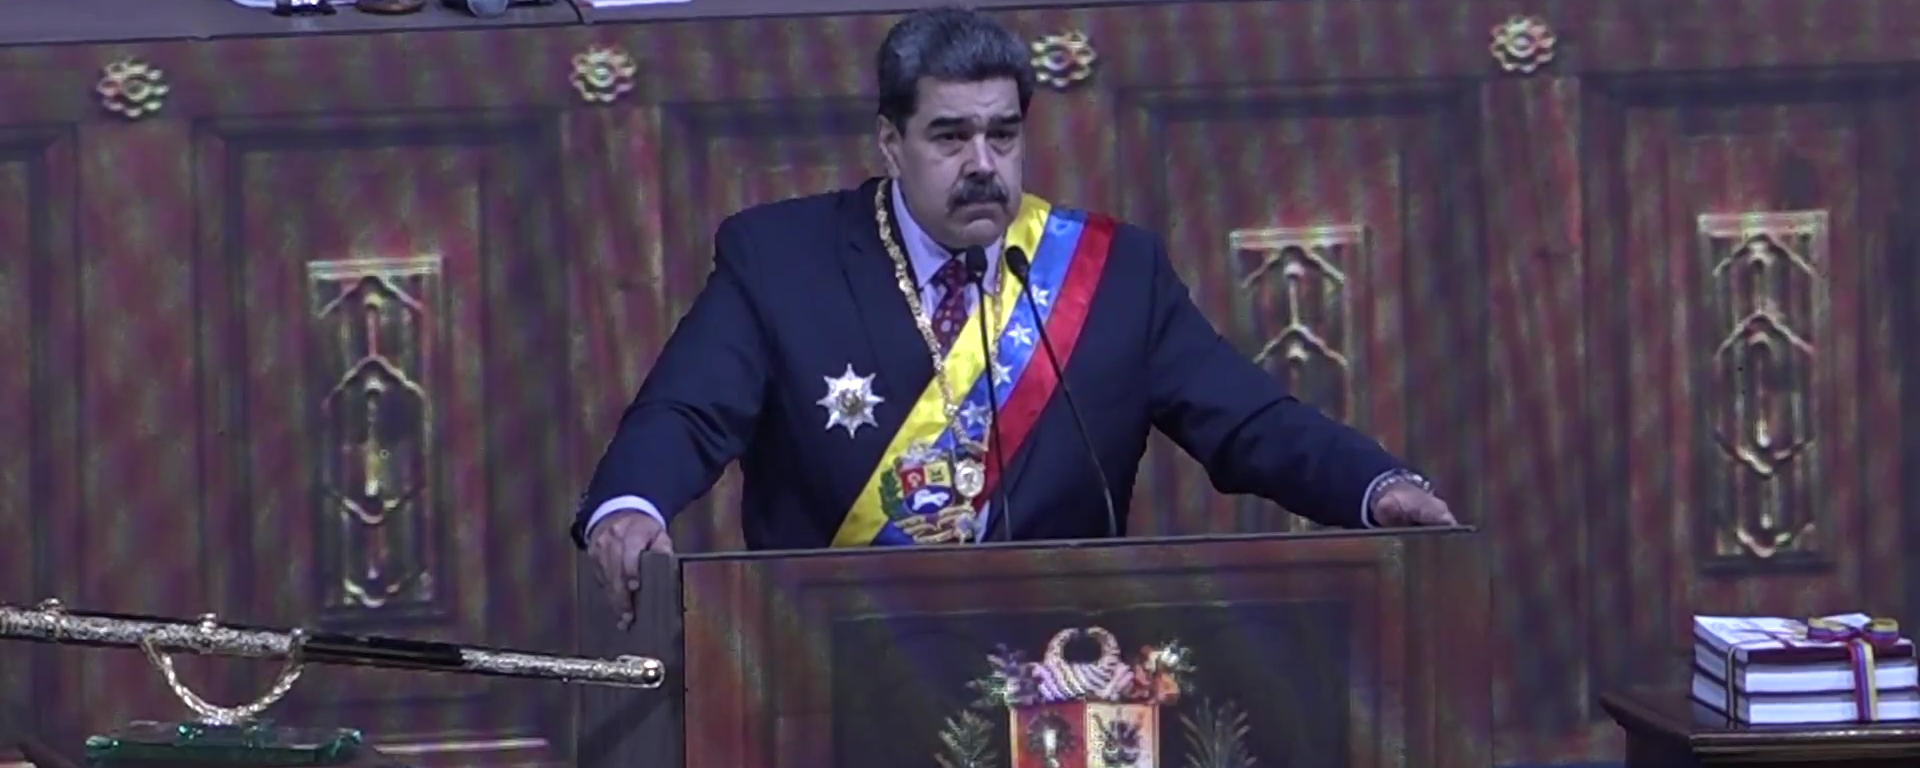 Maduro espera retomar el diálogo con la oposición en el futuro - Sputnik Mundo, 1920, 16.01.2022